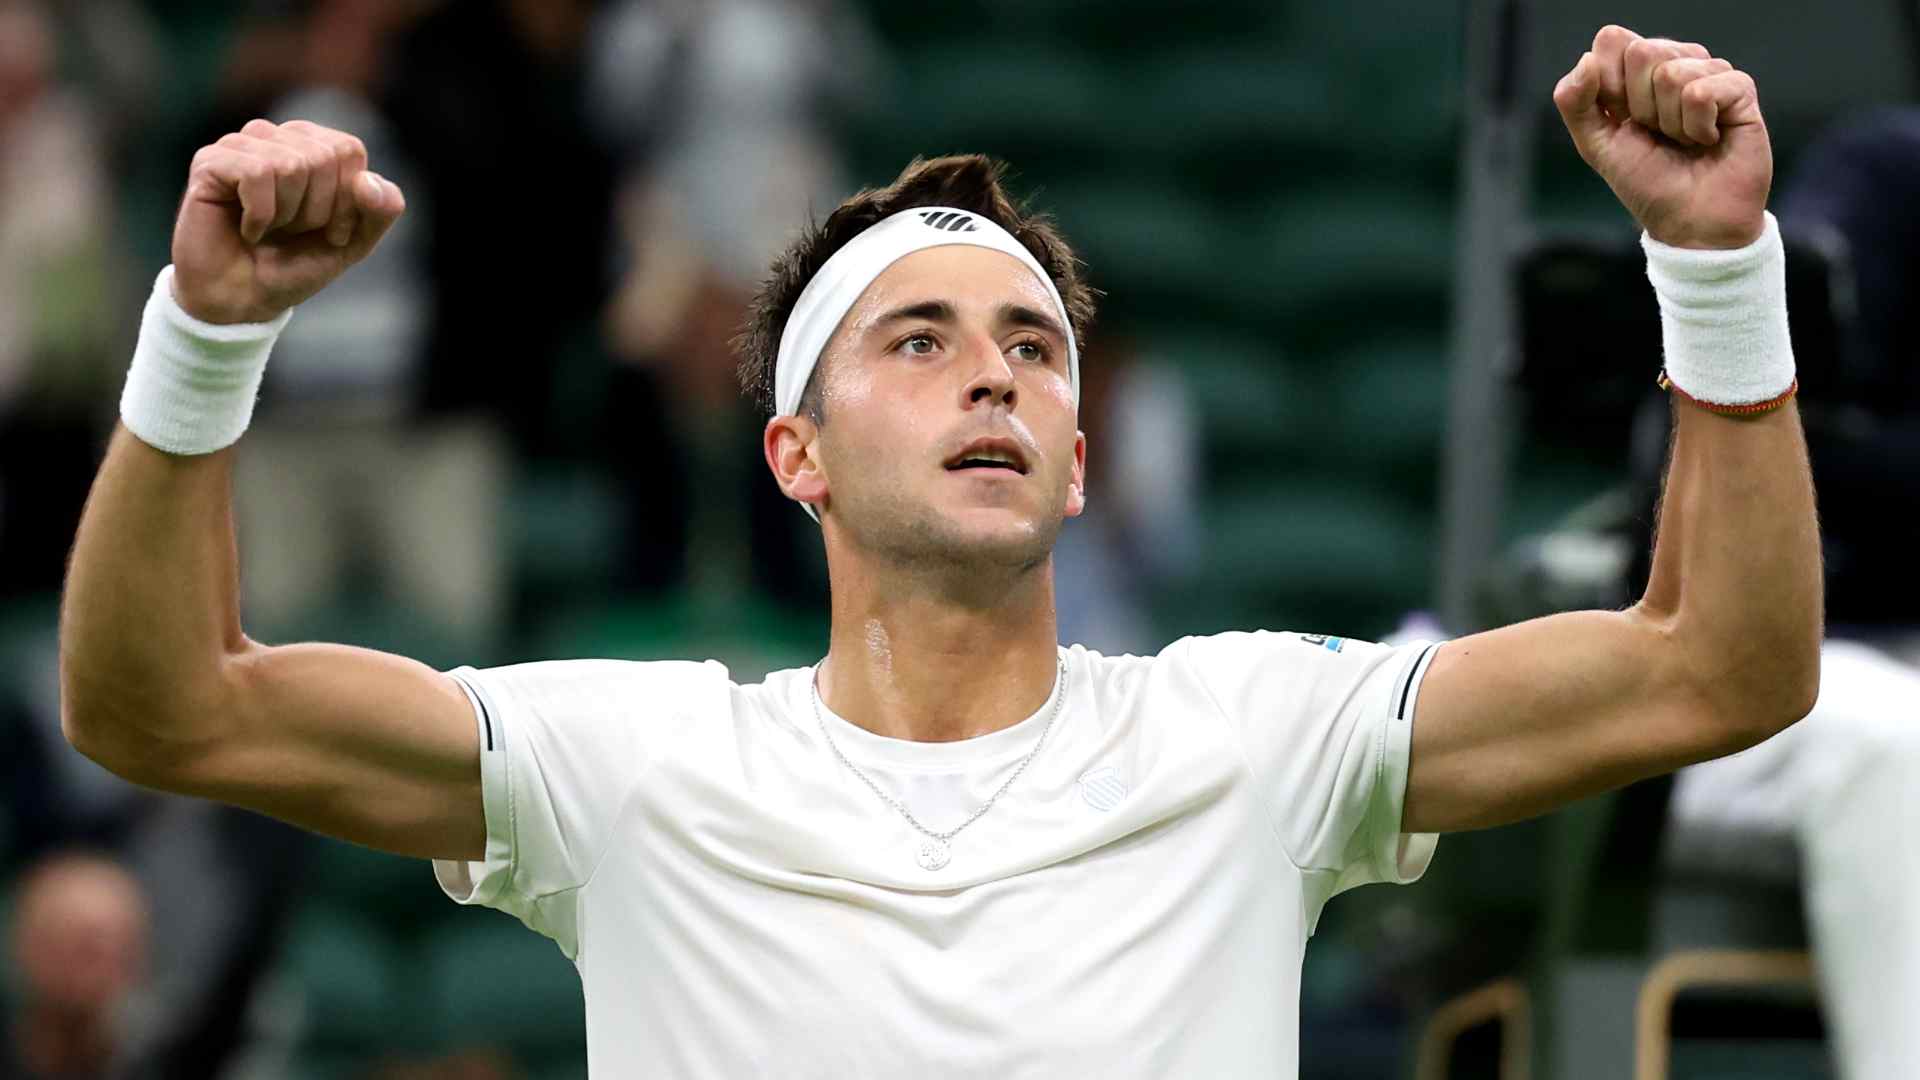 Tomás Etcheverry celebra su triunfo ante Bernabé Zapata para dejar en 1-0 su récord en Wimbledon.